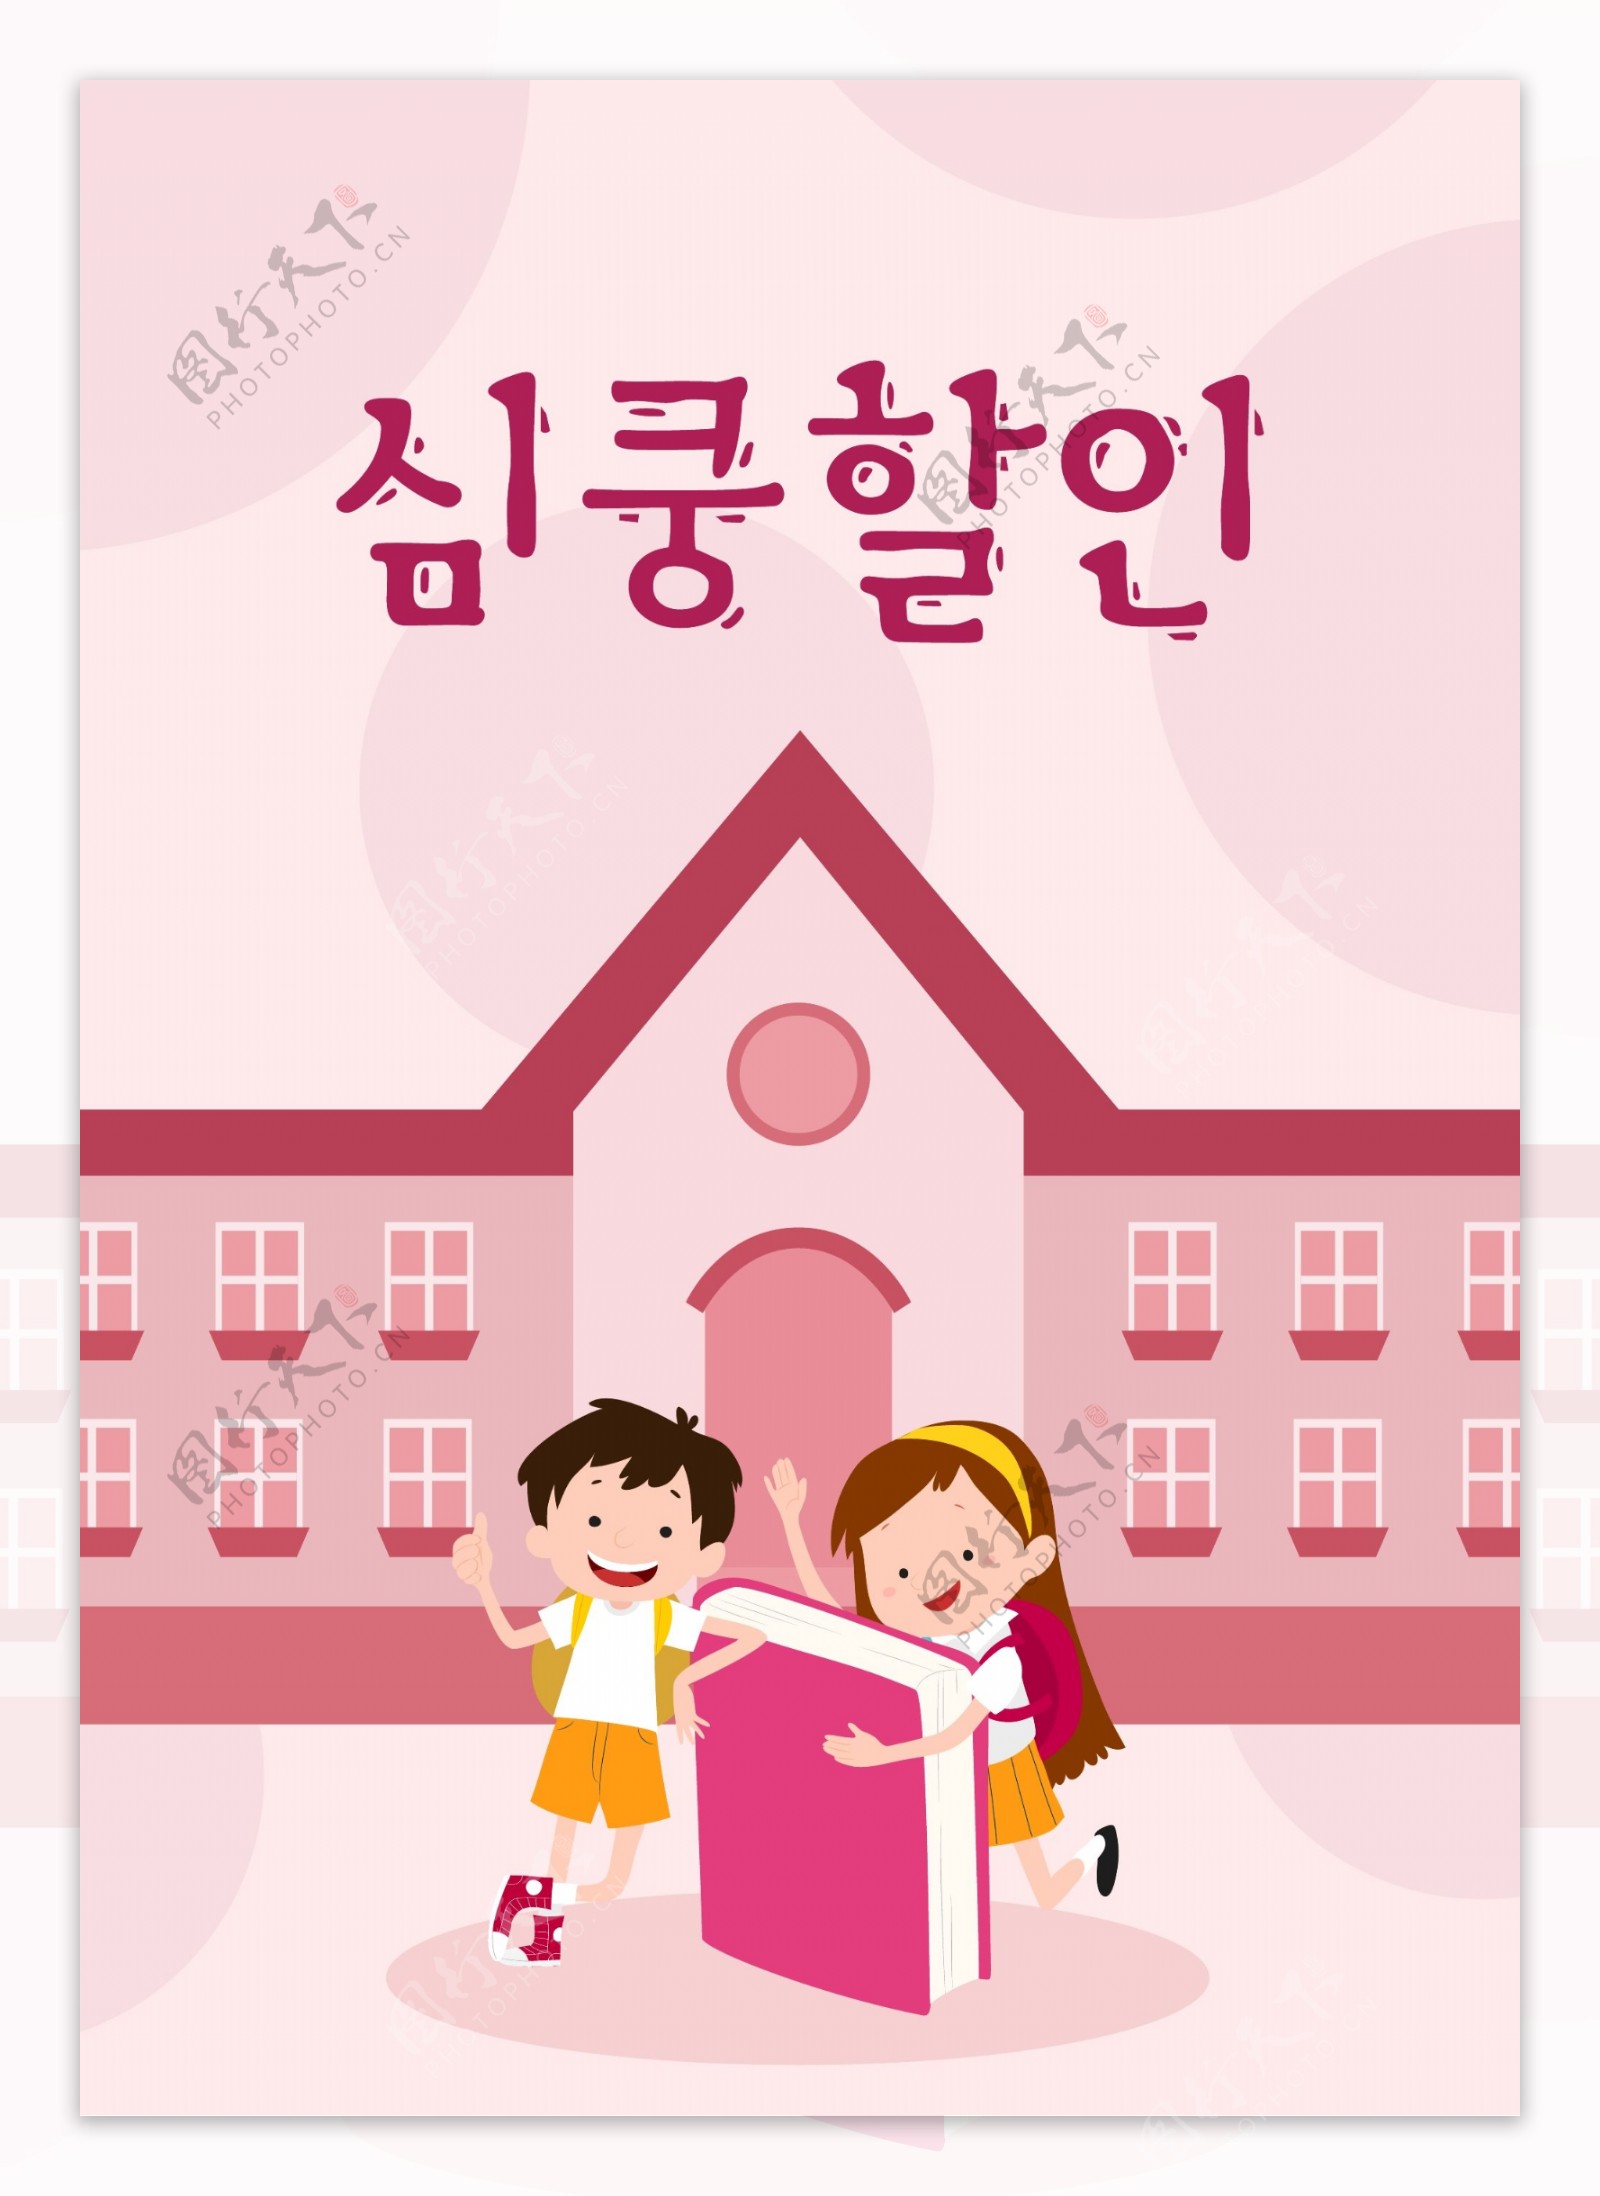 男士和女士粉红色的宣传海报